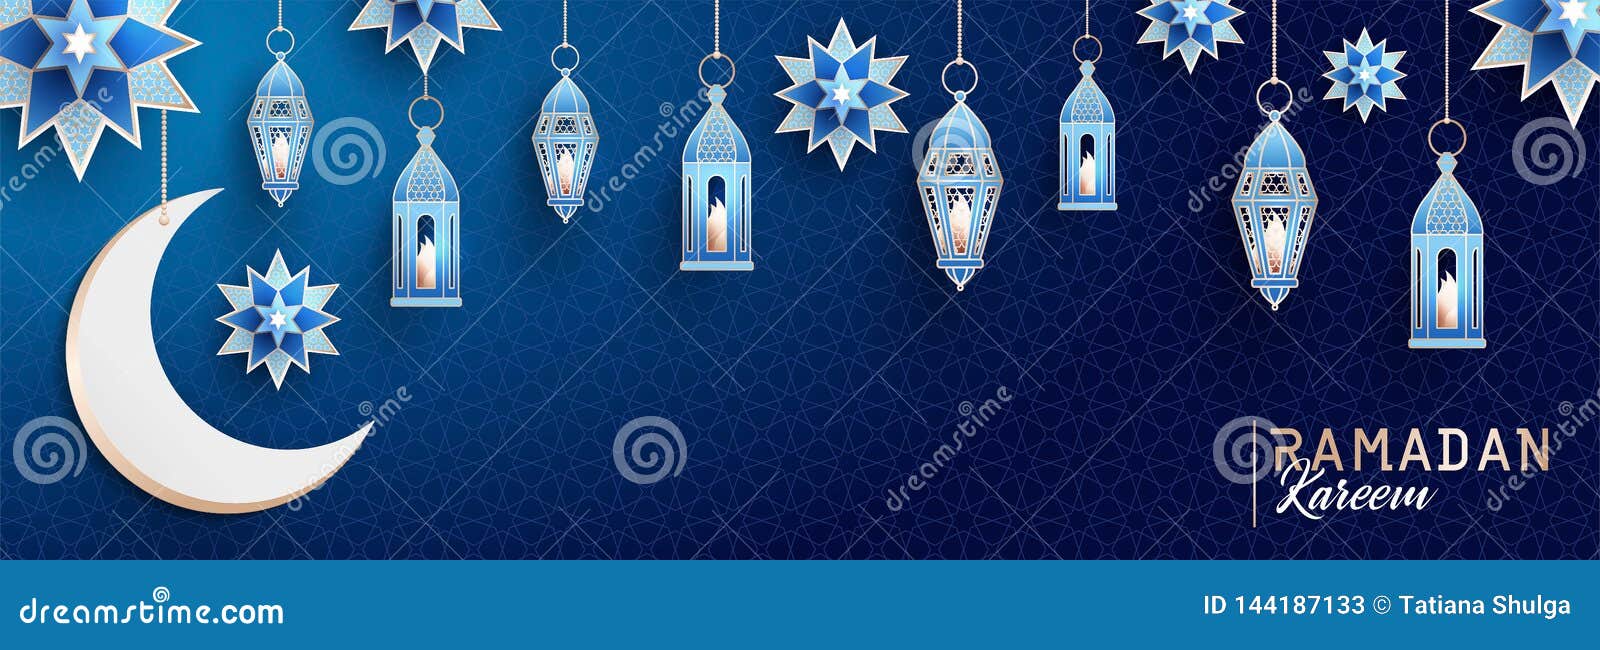 Ramadan Kareem horisontalbaner med arabesque, traditionella lyktor, halvmånformigt och stjärnor på mörkt - blå bakgrund för natth. E Arabesque, traditionella lyktor, halvmånformig och stjärnor på mörkt - blå bakgrund för natthimmel också vektor för coreldrawillustration